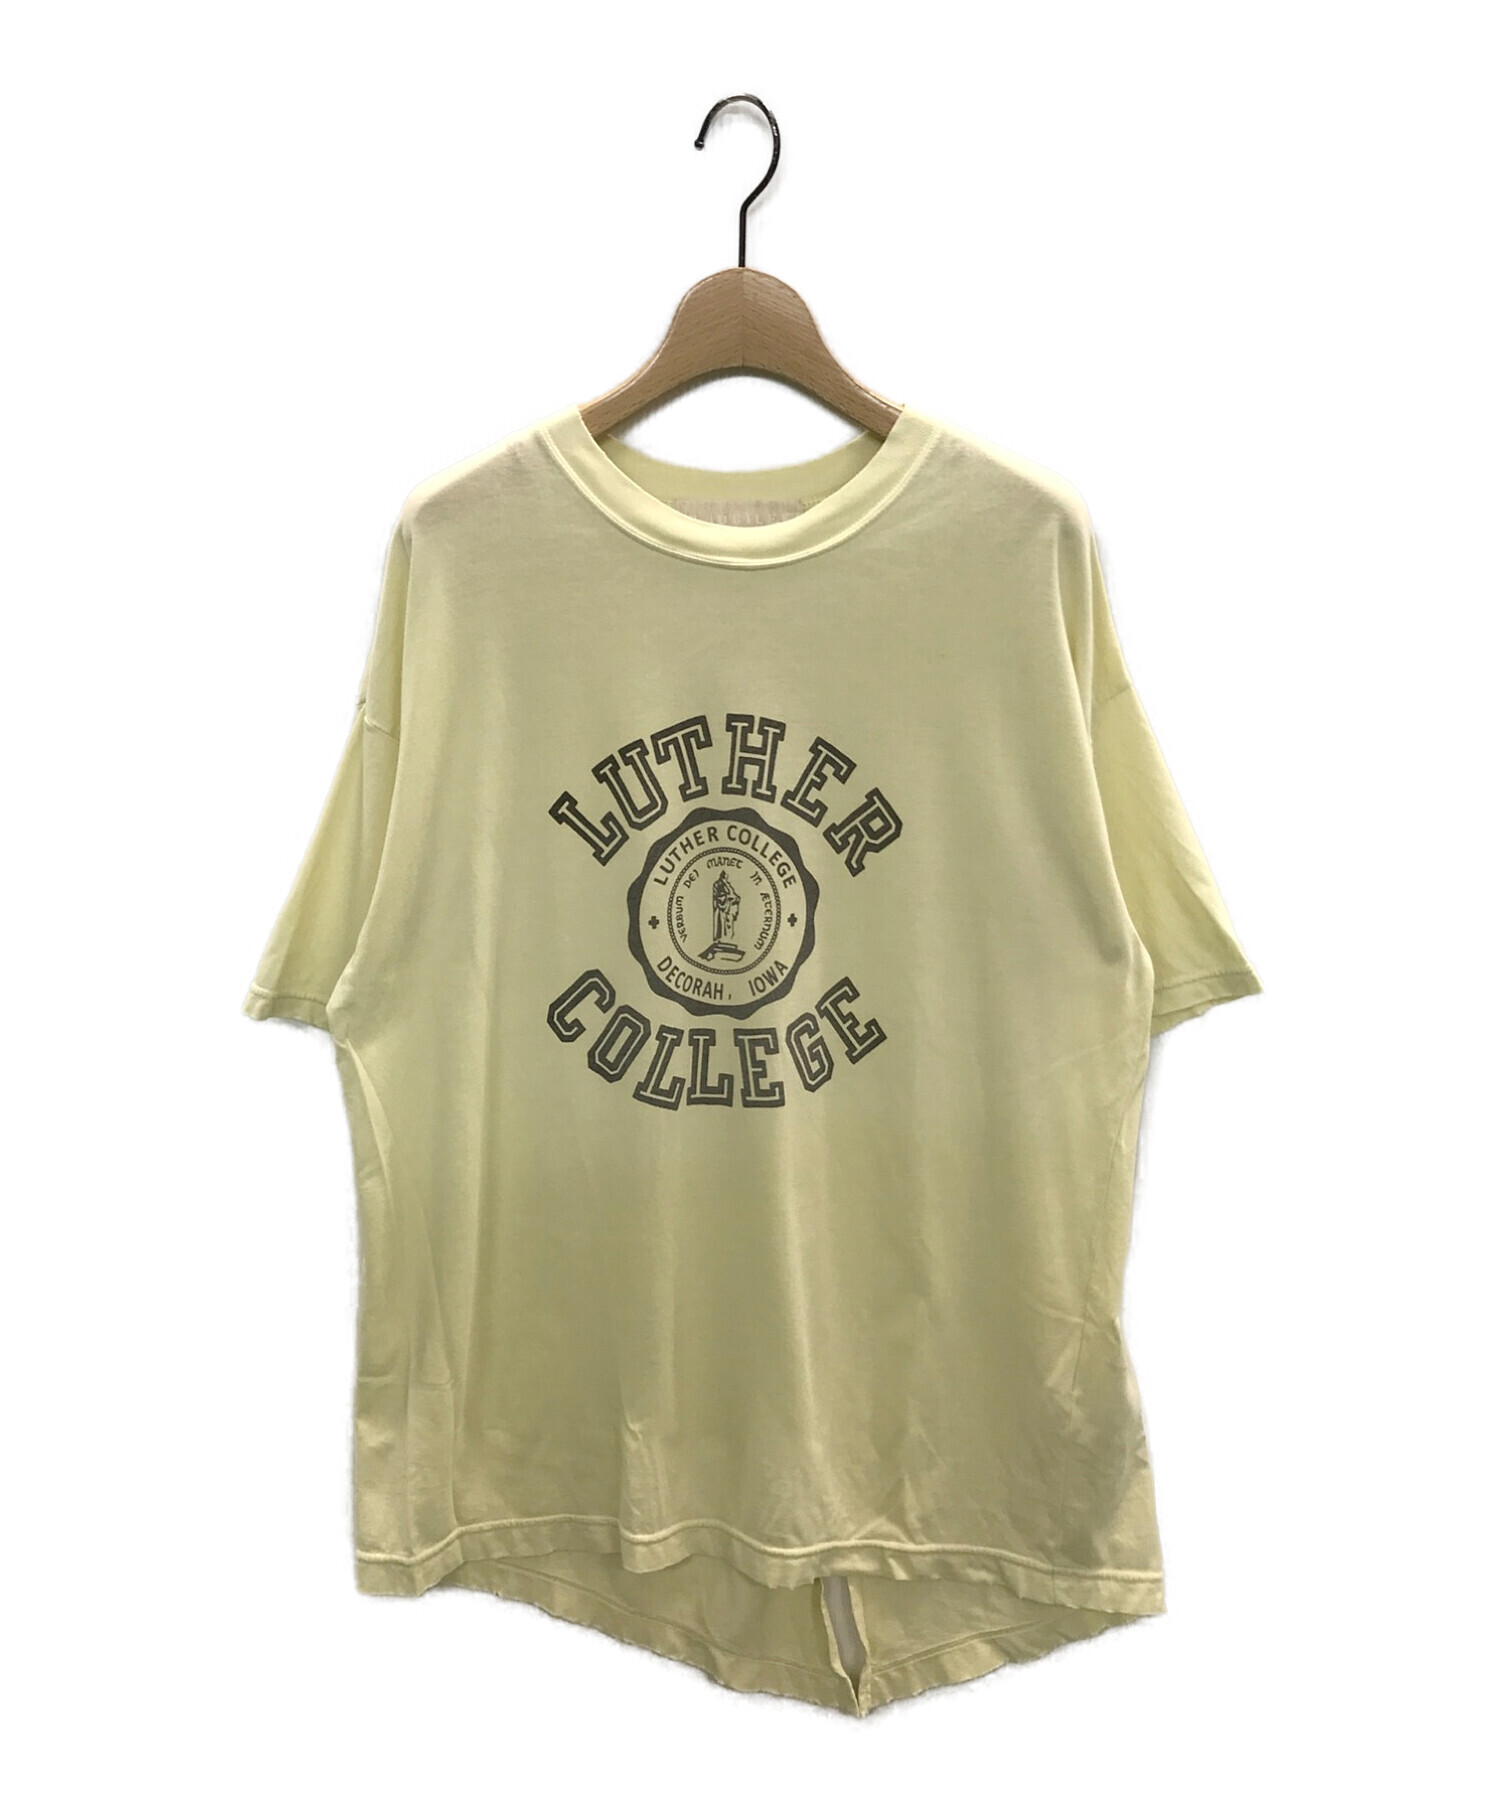 ソースコード 【R JUBILEE】LUTHER COLLEGE Tシャツ | www.butiuae.com